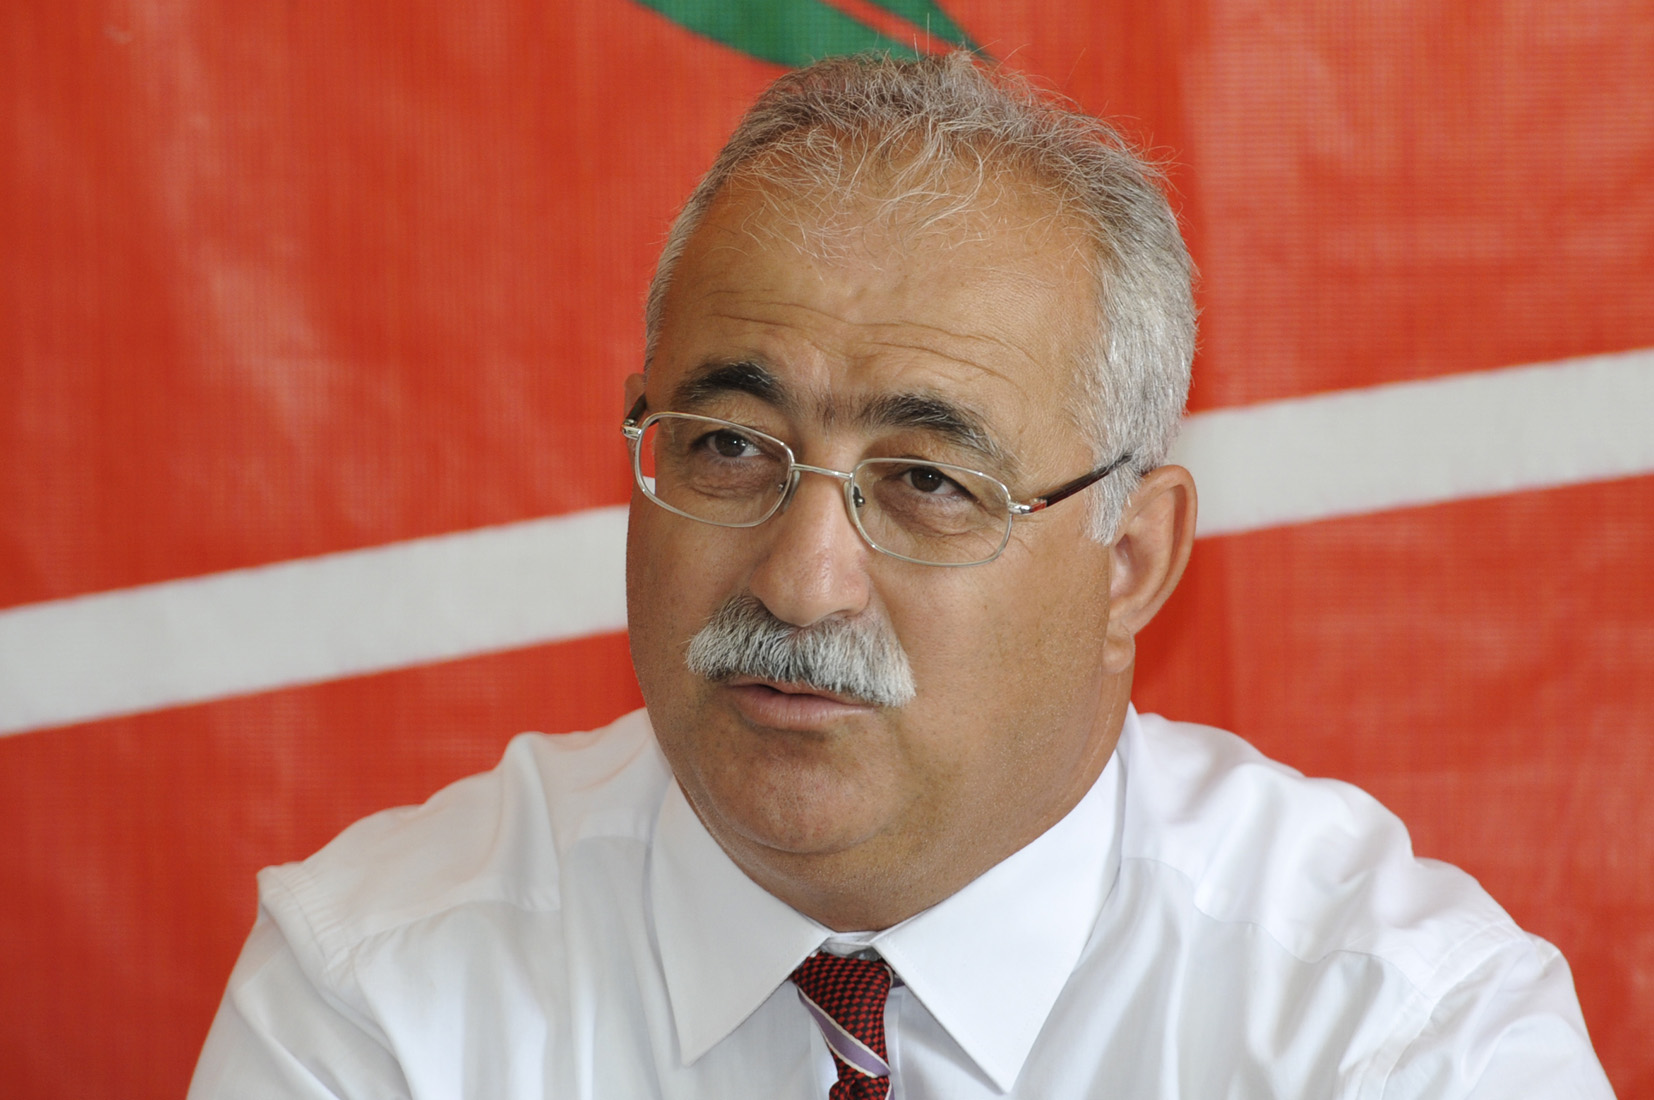 Ο Πρόεδρος της BKP İzzet İzcan: “Ο Ερντογάν είναι ο Πρόεδρος του Συνταγματικού Δικαστηρίου.